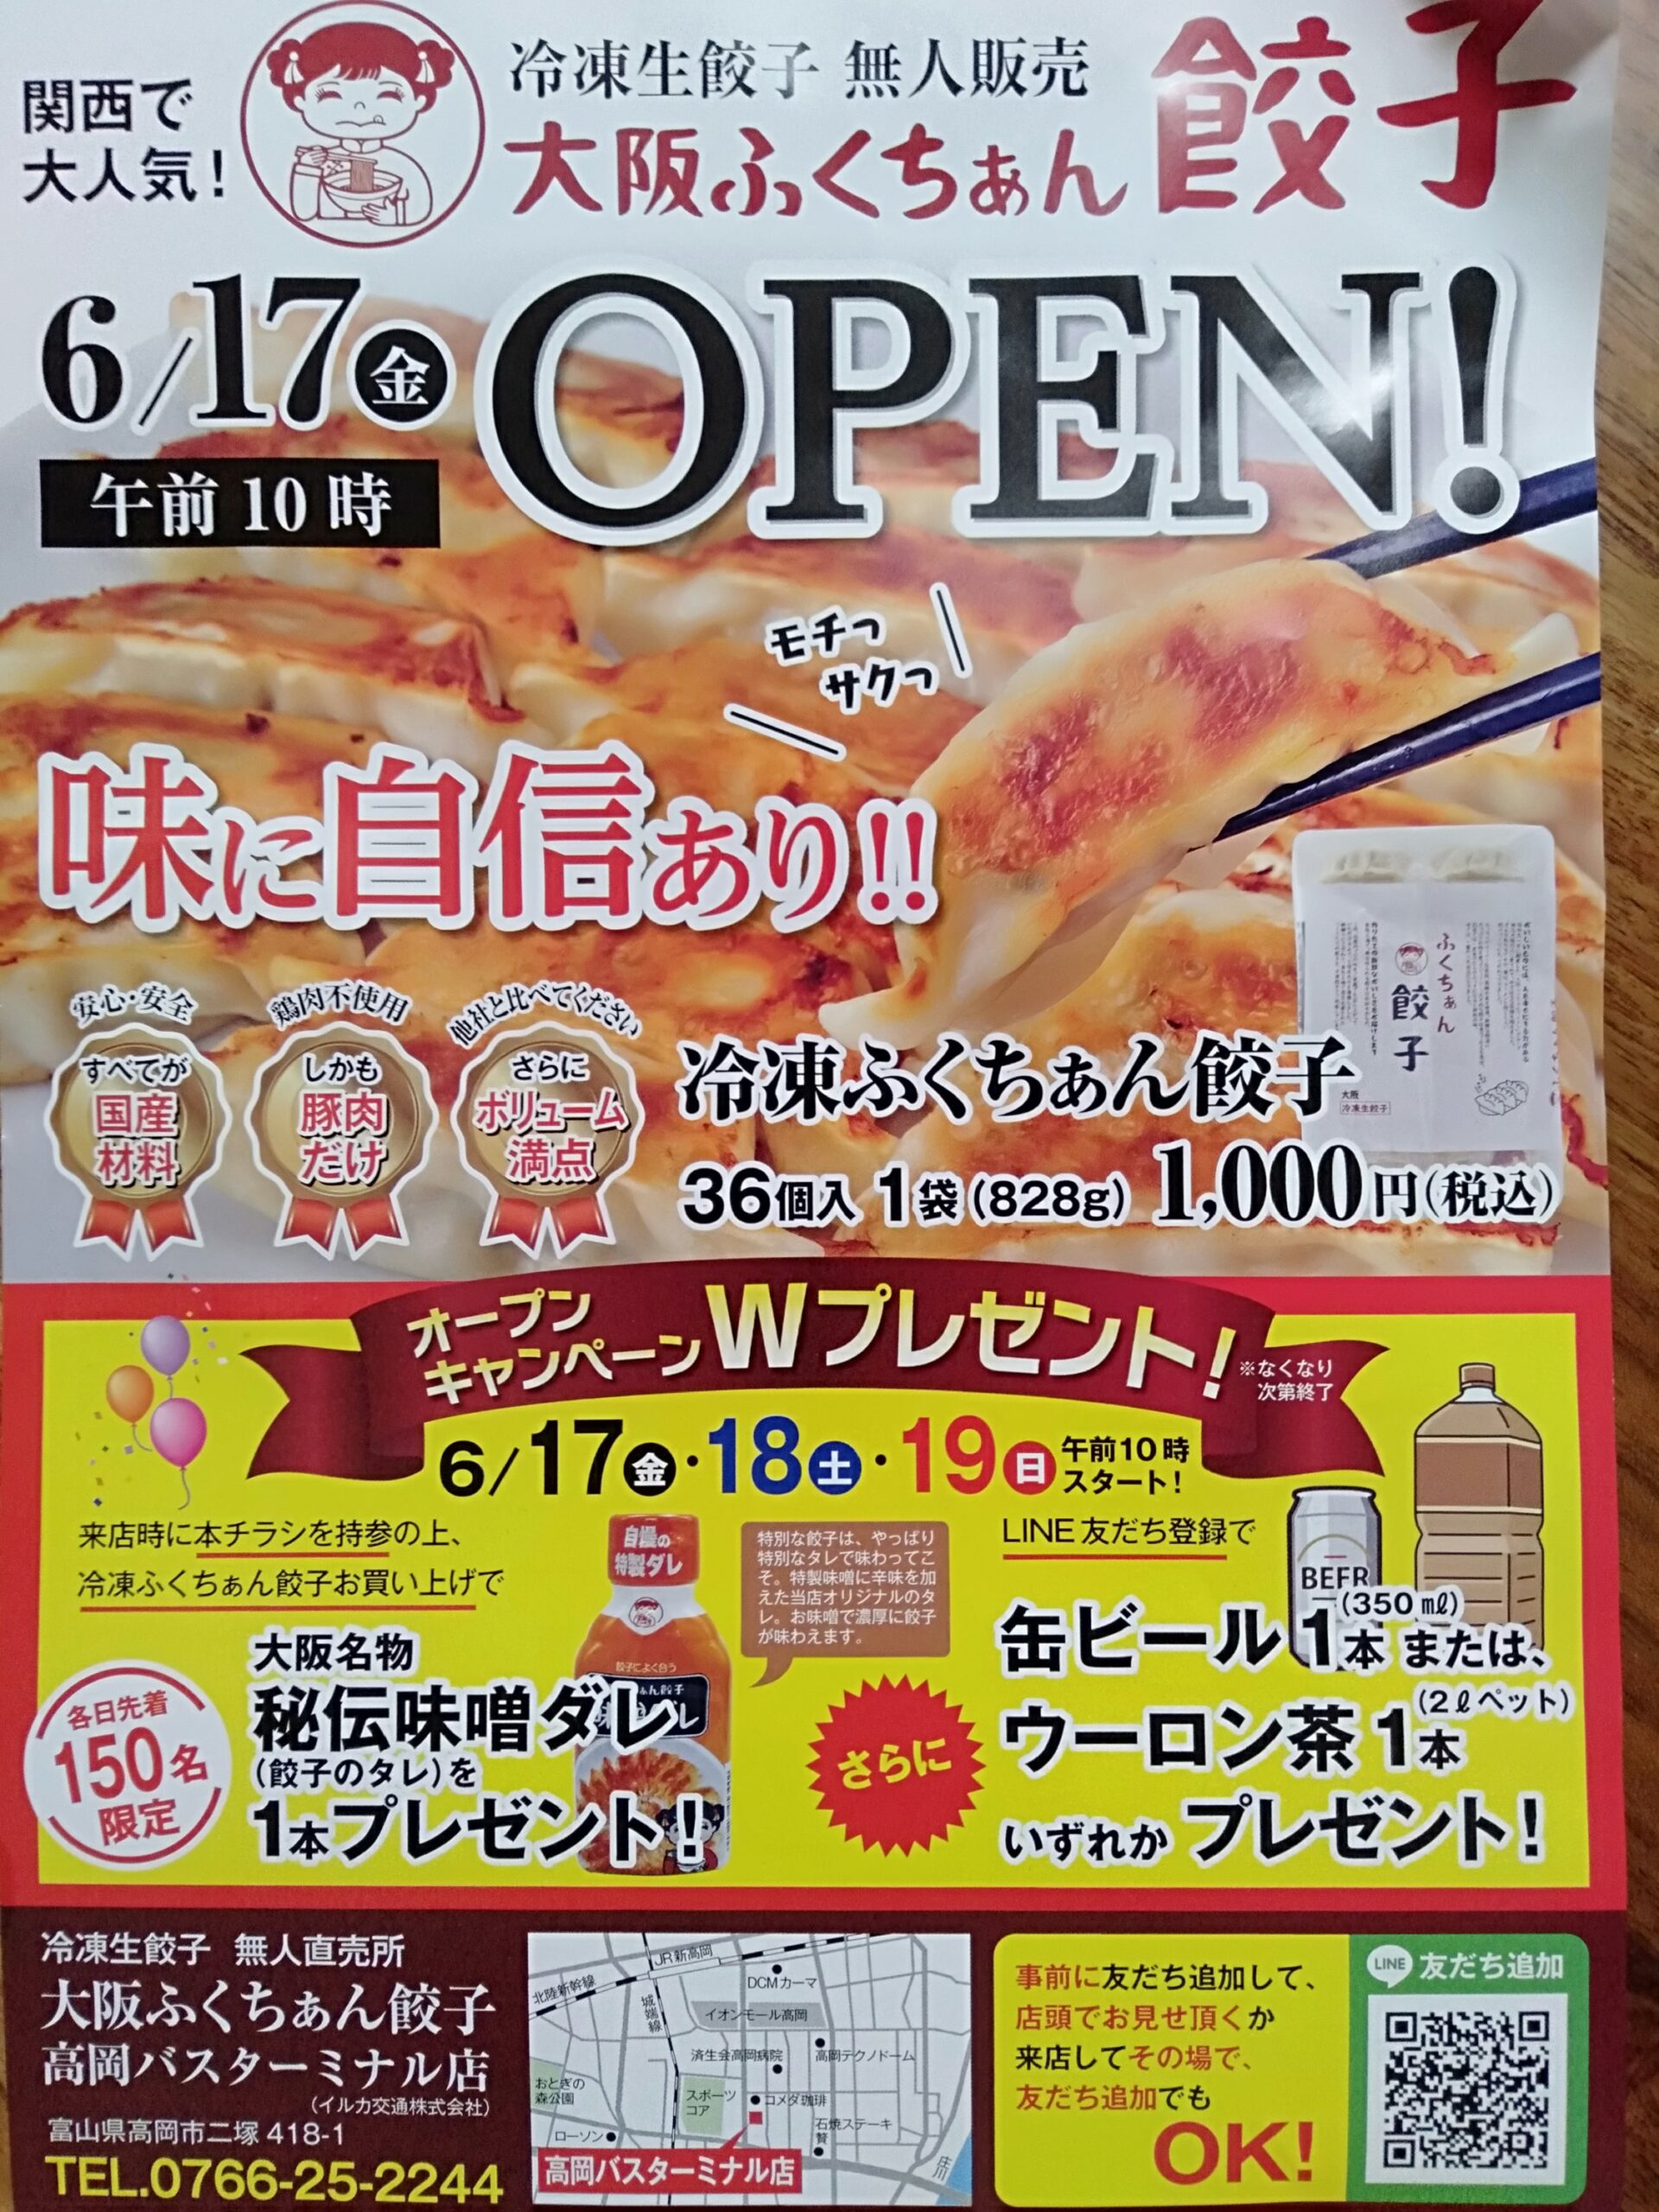 無人餃子店2店舗目が高岡市のイルカ交通敷地内にオープンするらしい。